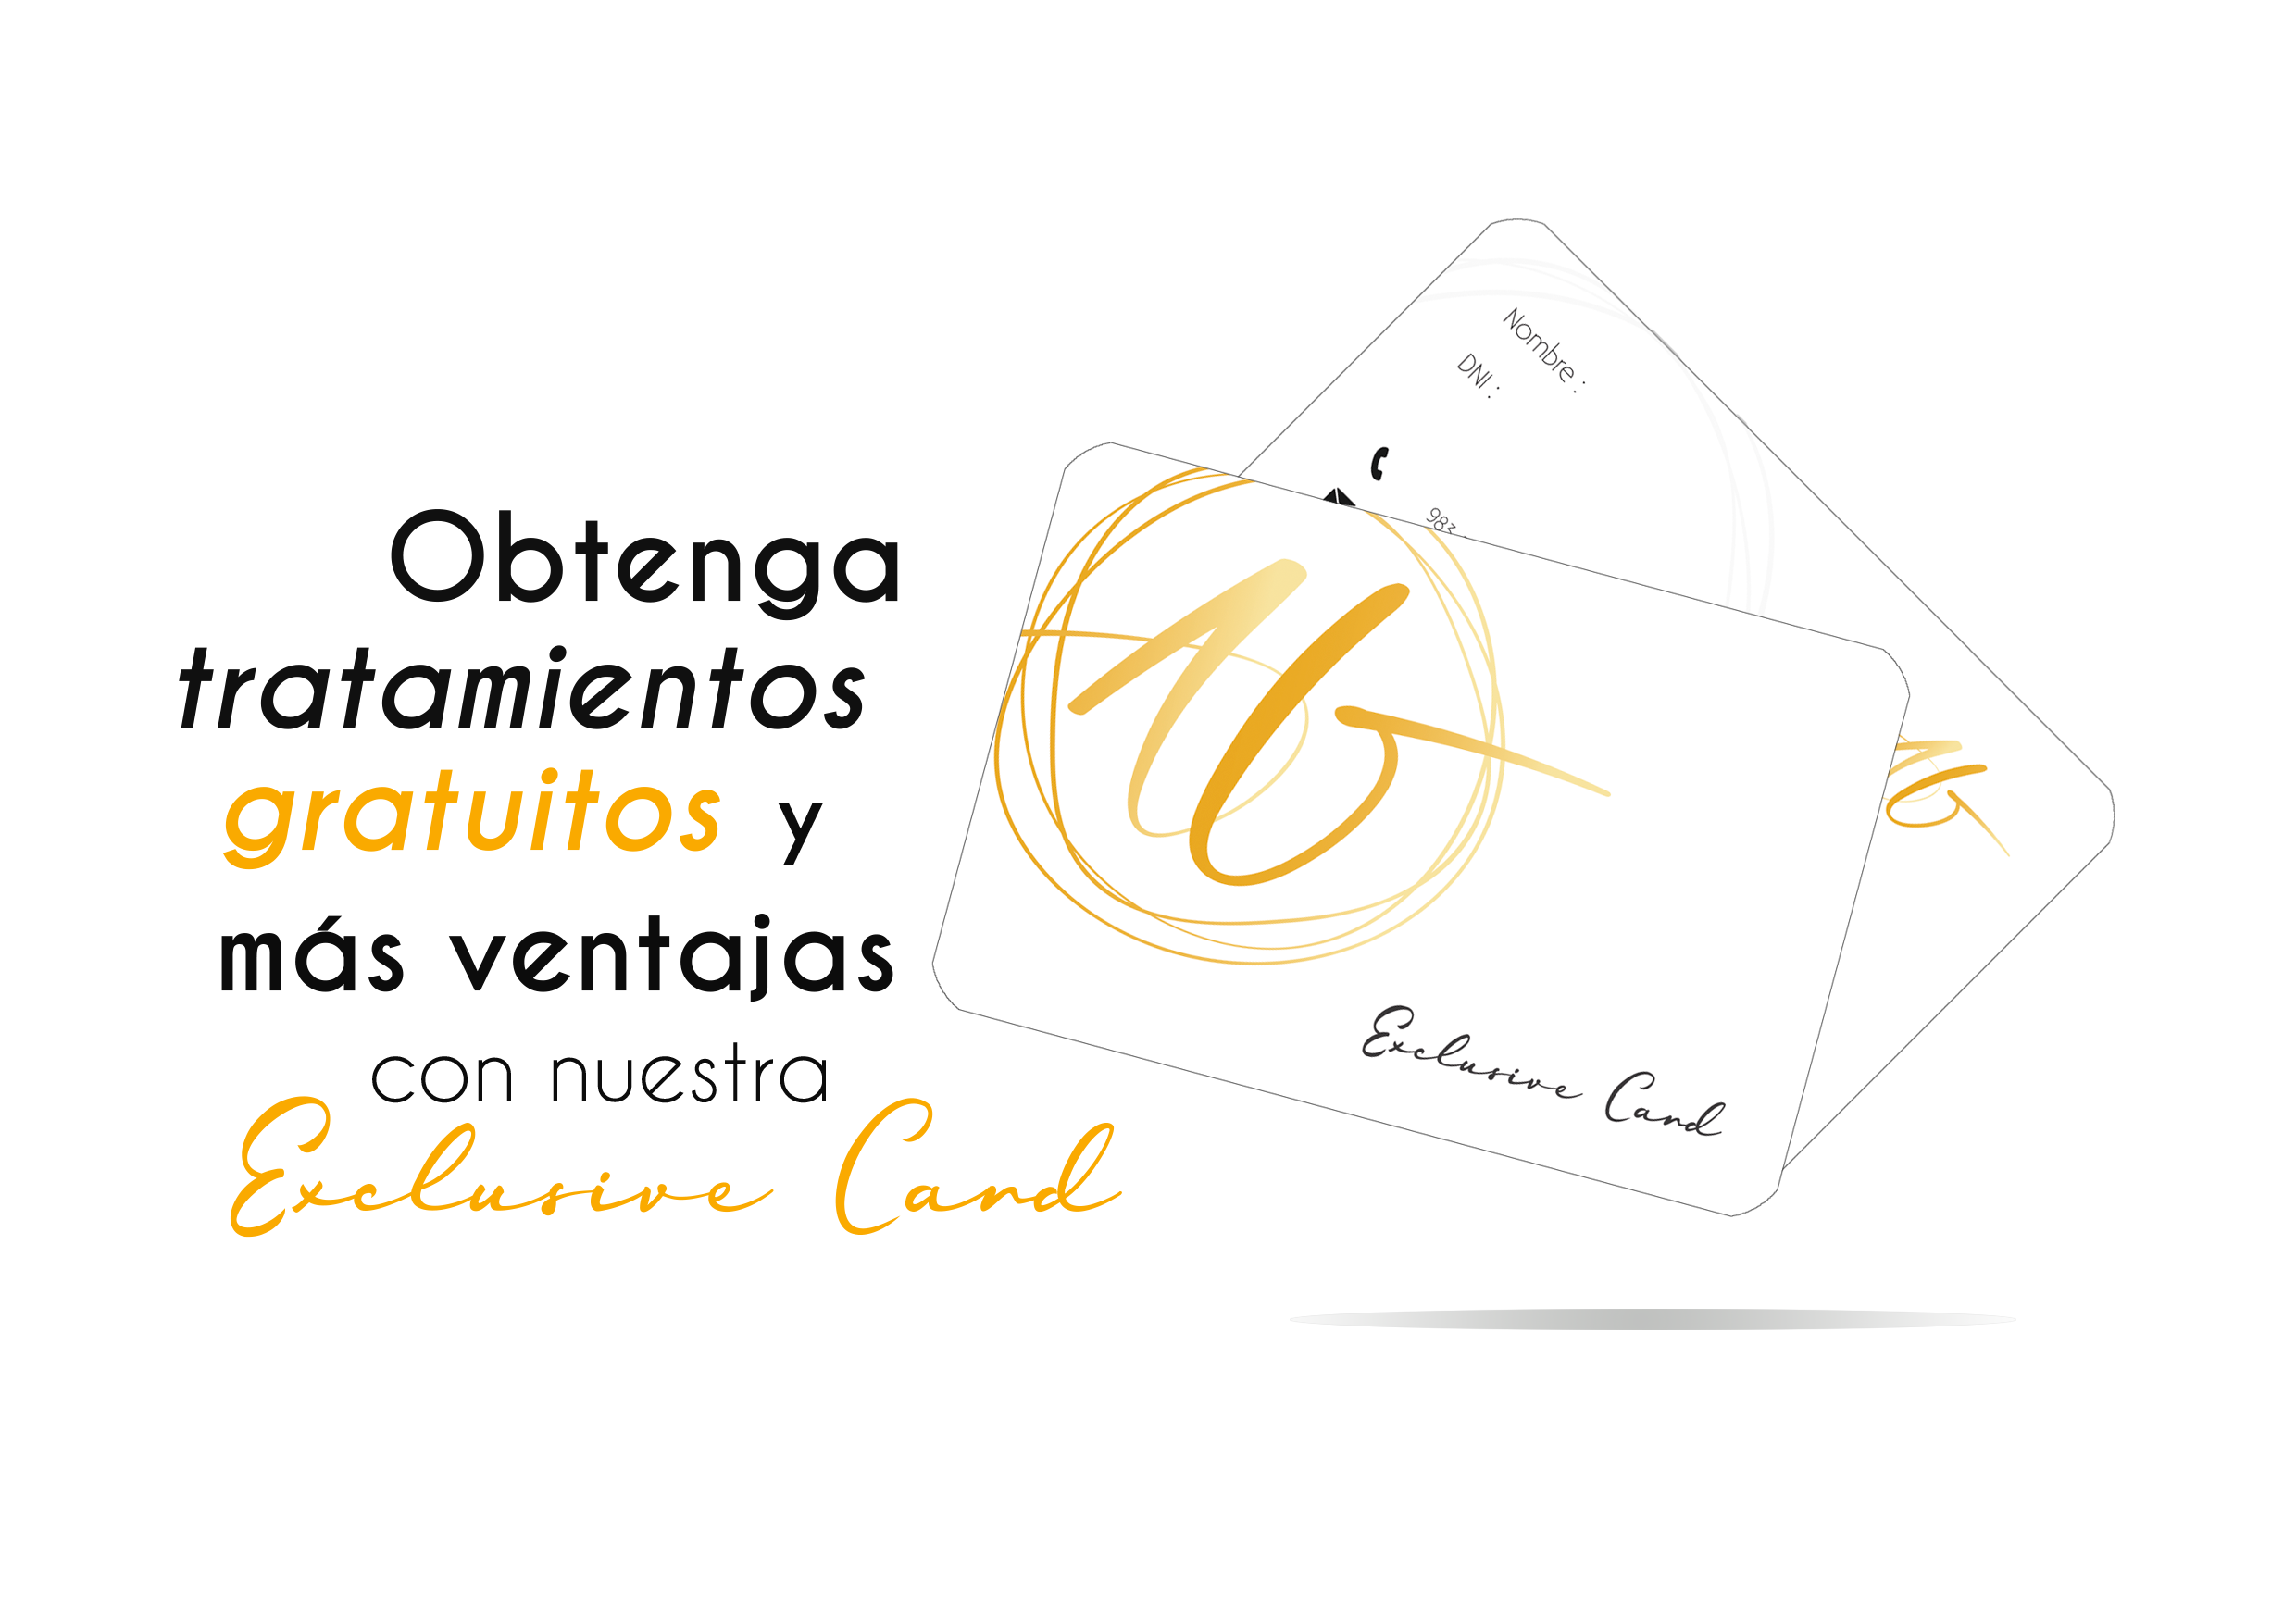 Alberto García Centro Odontológico Tarjeta Exclusive Card